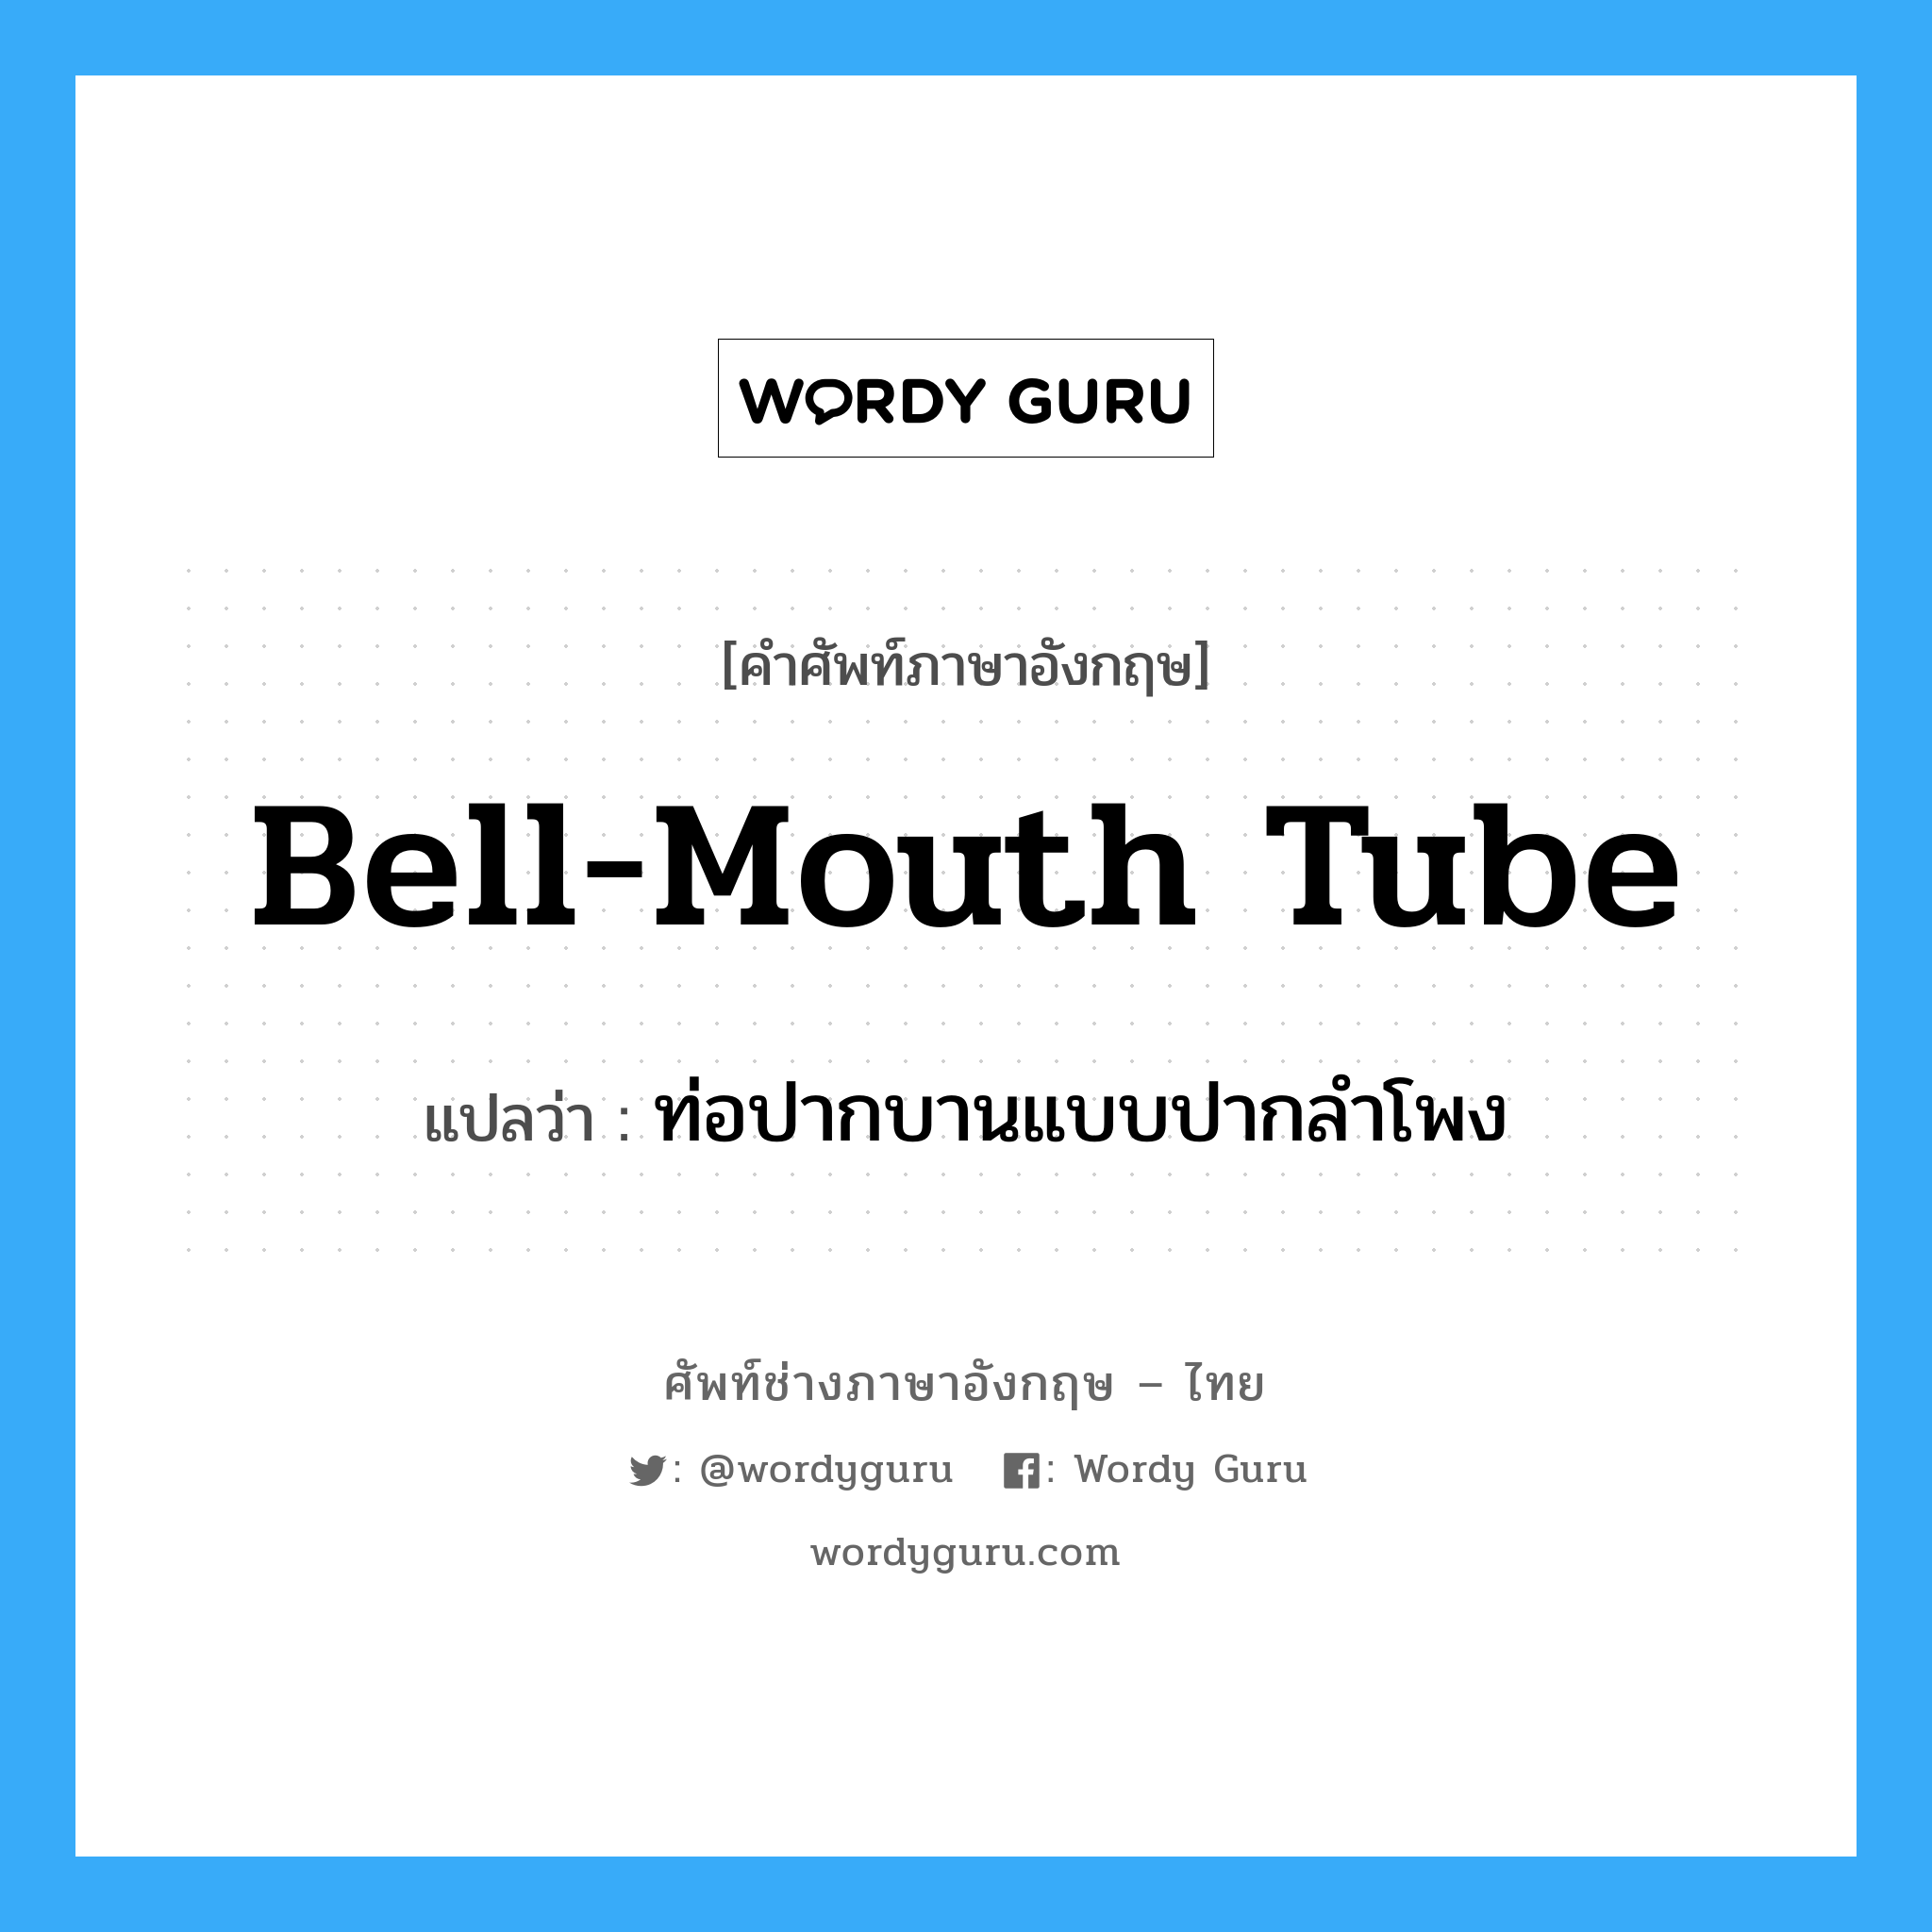 ท่อปากบานแบบปากลำโพง ภาษาอังกฤษ?, คำศัพท์ช่างภาษาอังกฤษ - ไทย ท่อปากบานแบบปากลำโพง คำศัพท์ภาษาอังกฤษ ท่อปากบานแบบปากลำโพง แปลว่า bell-mouth tube